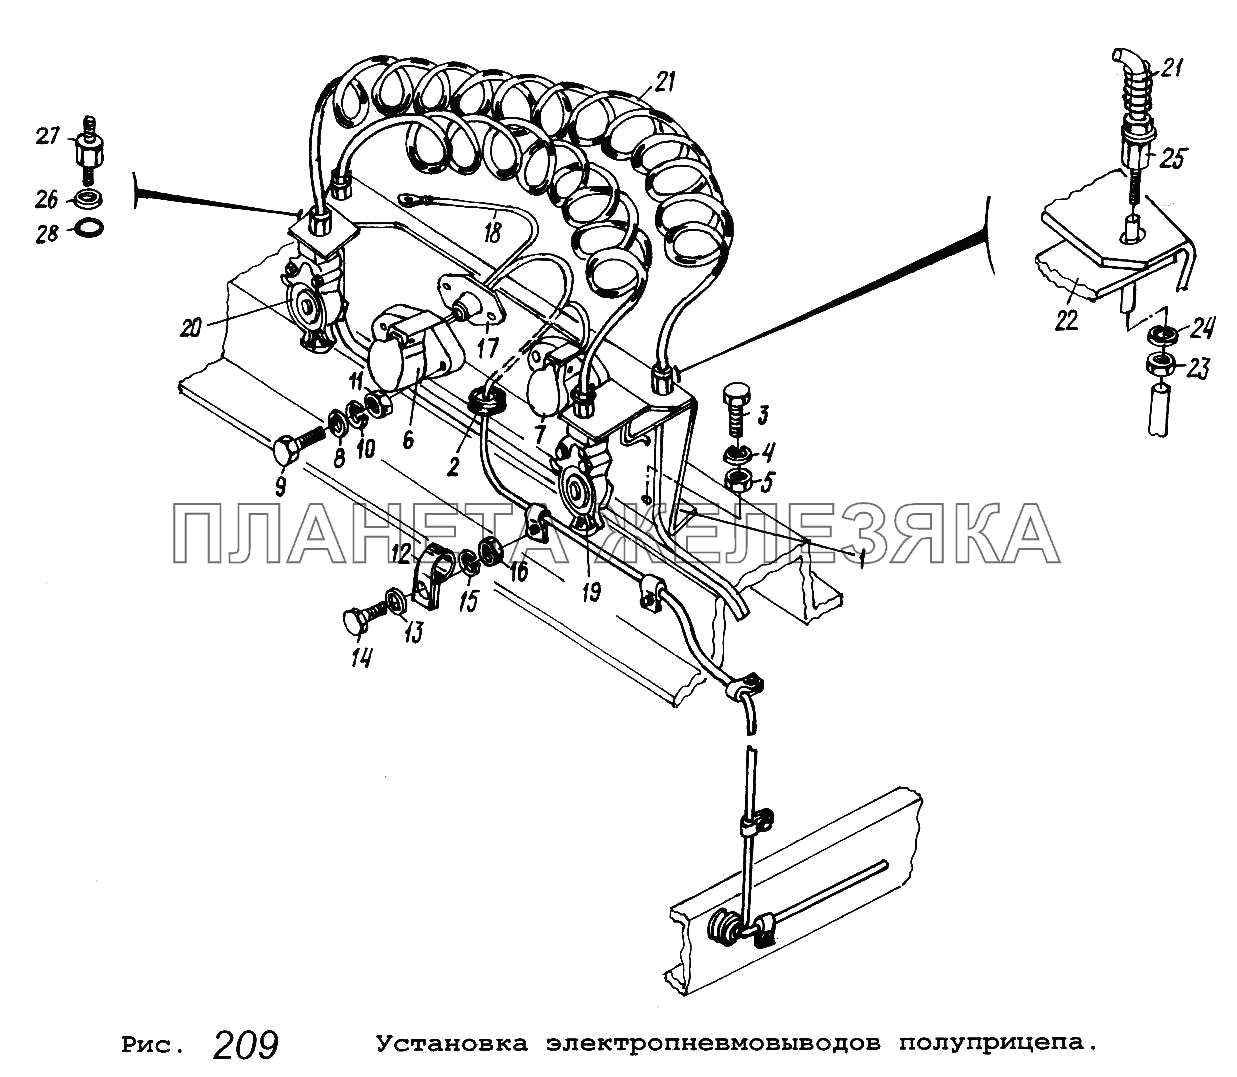 Установка электропневмовыводов полуприцепа МАЗ-53371